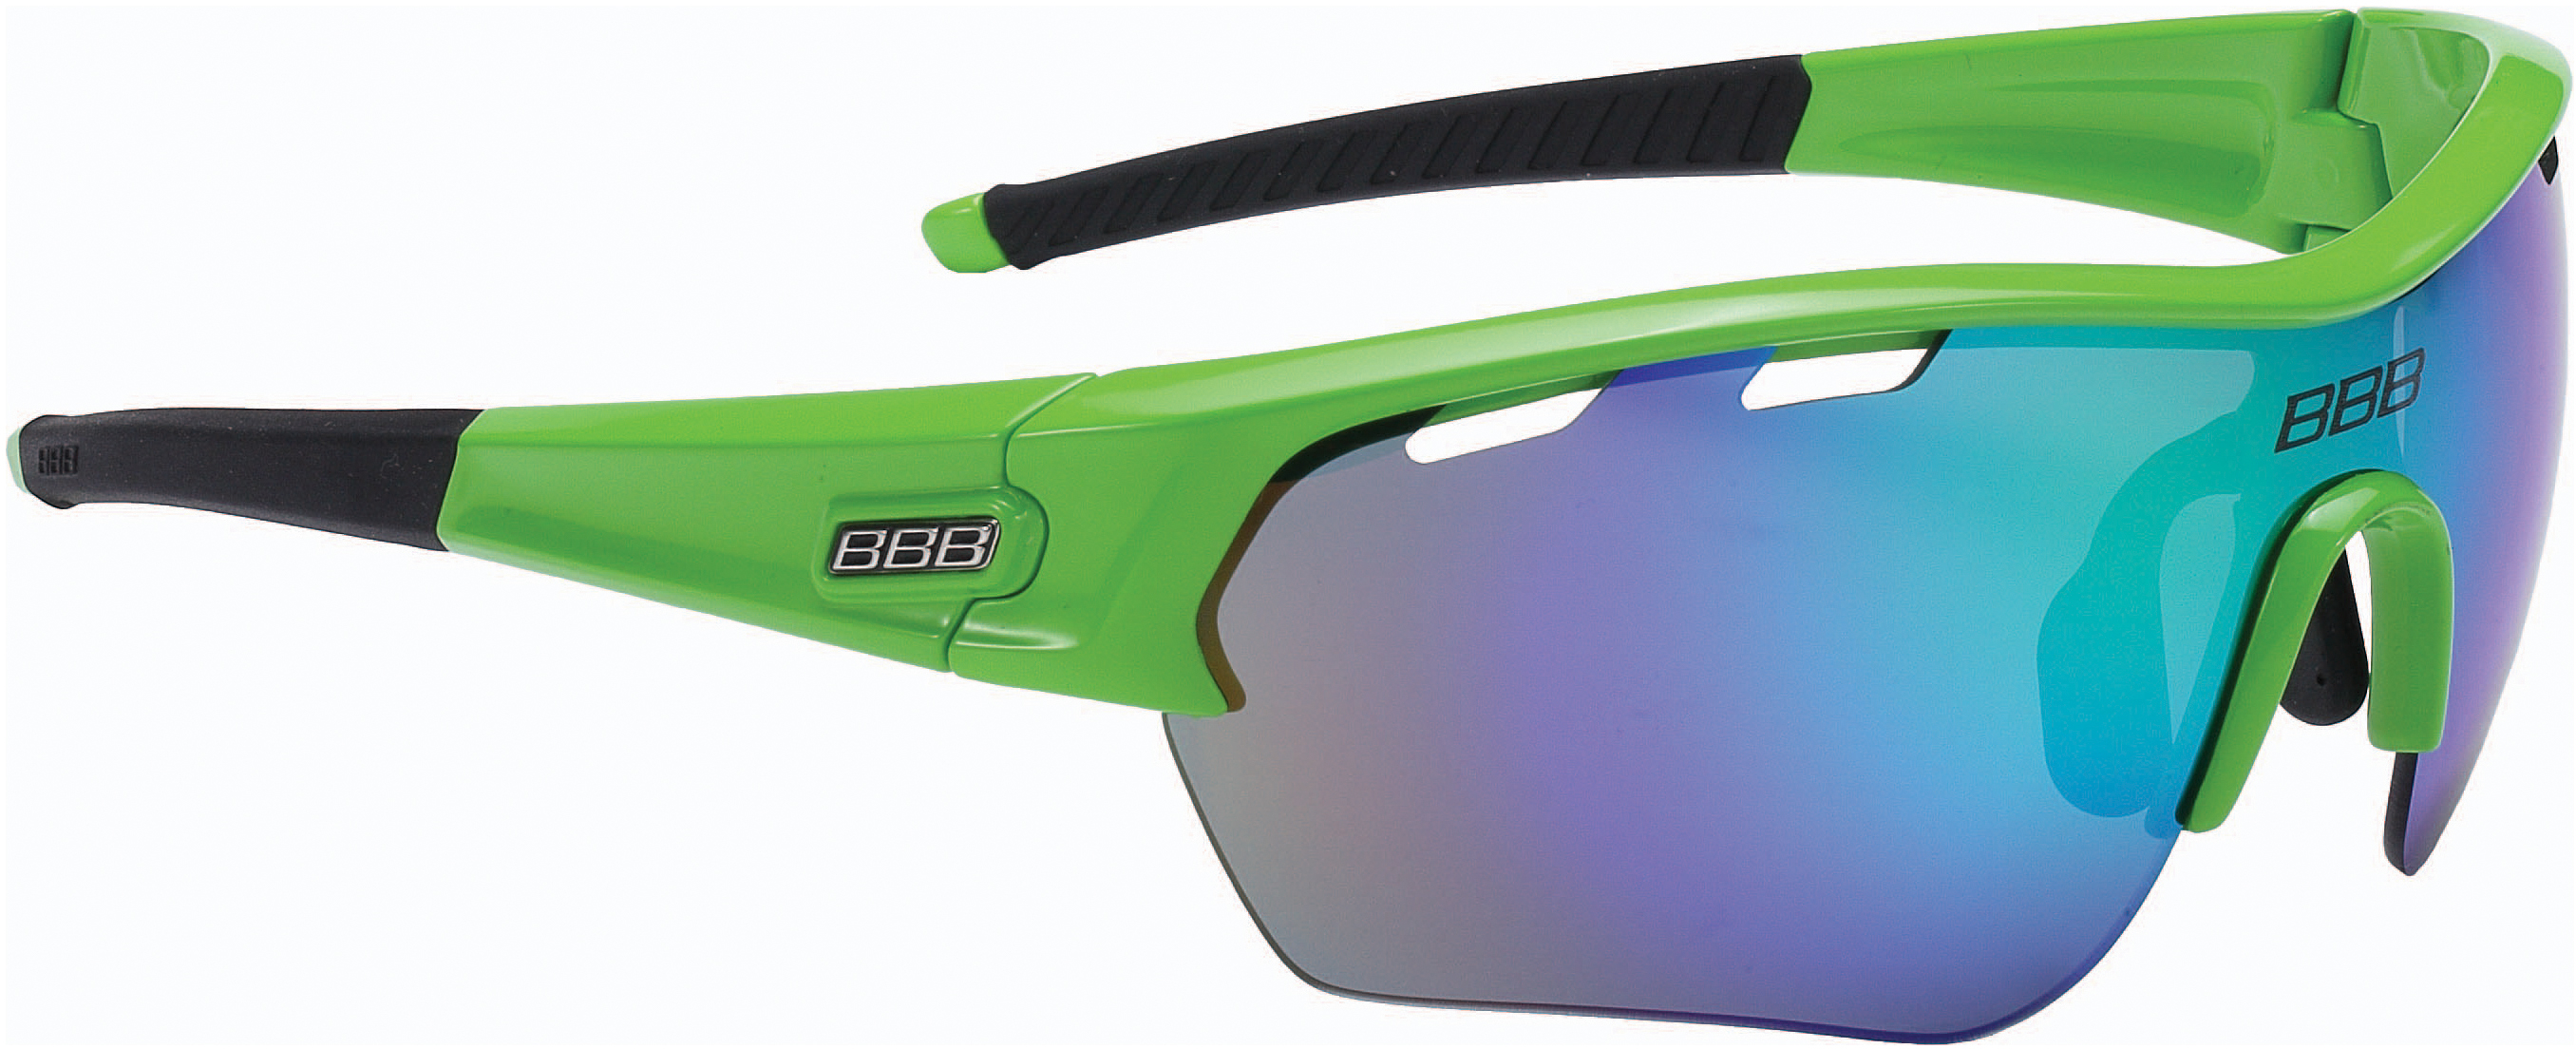 Emulatie Editie Regenjas BBB Select XL Sport Glasses - Corley Cycles